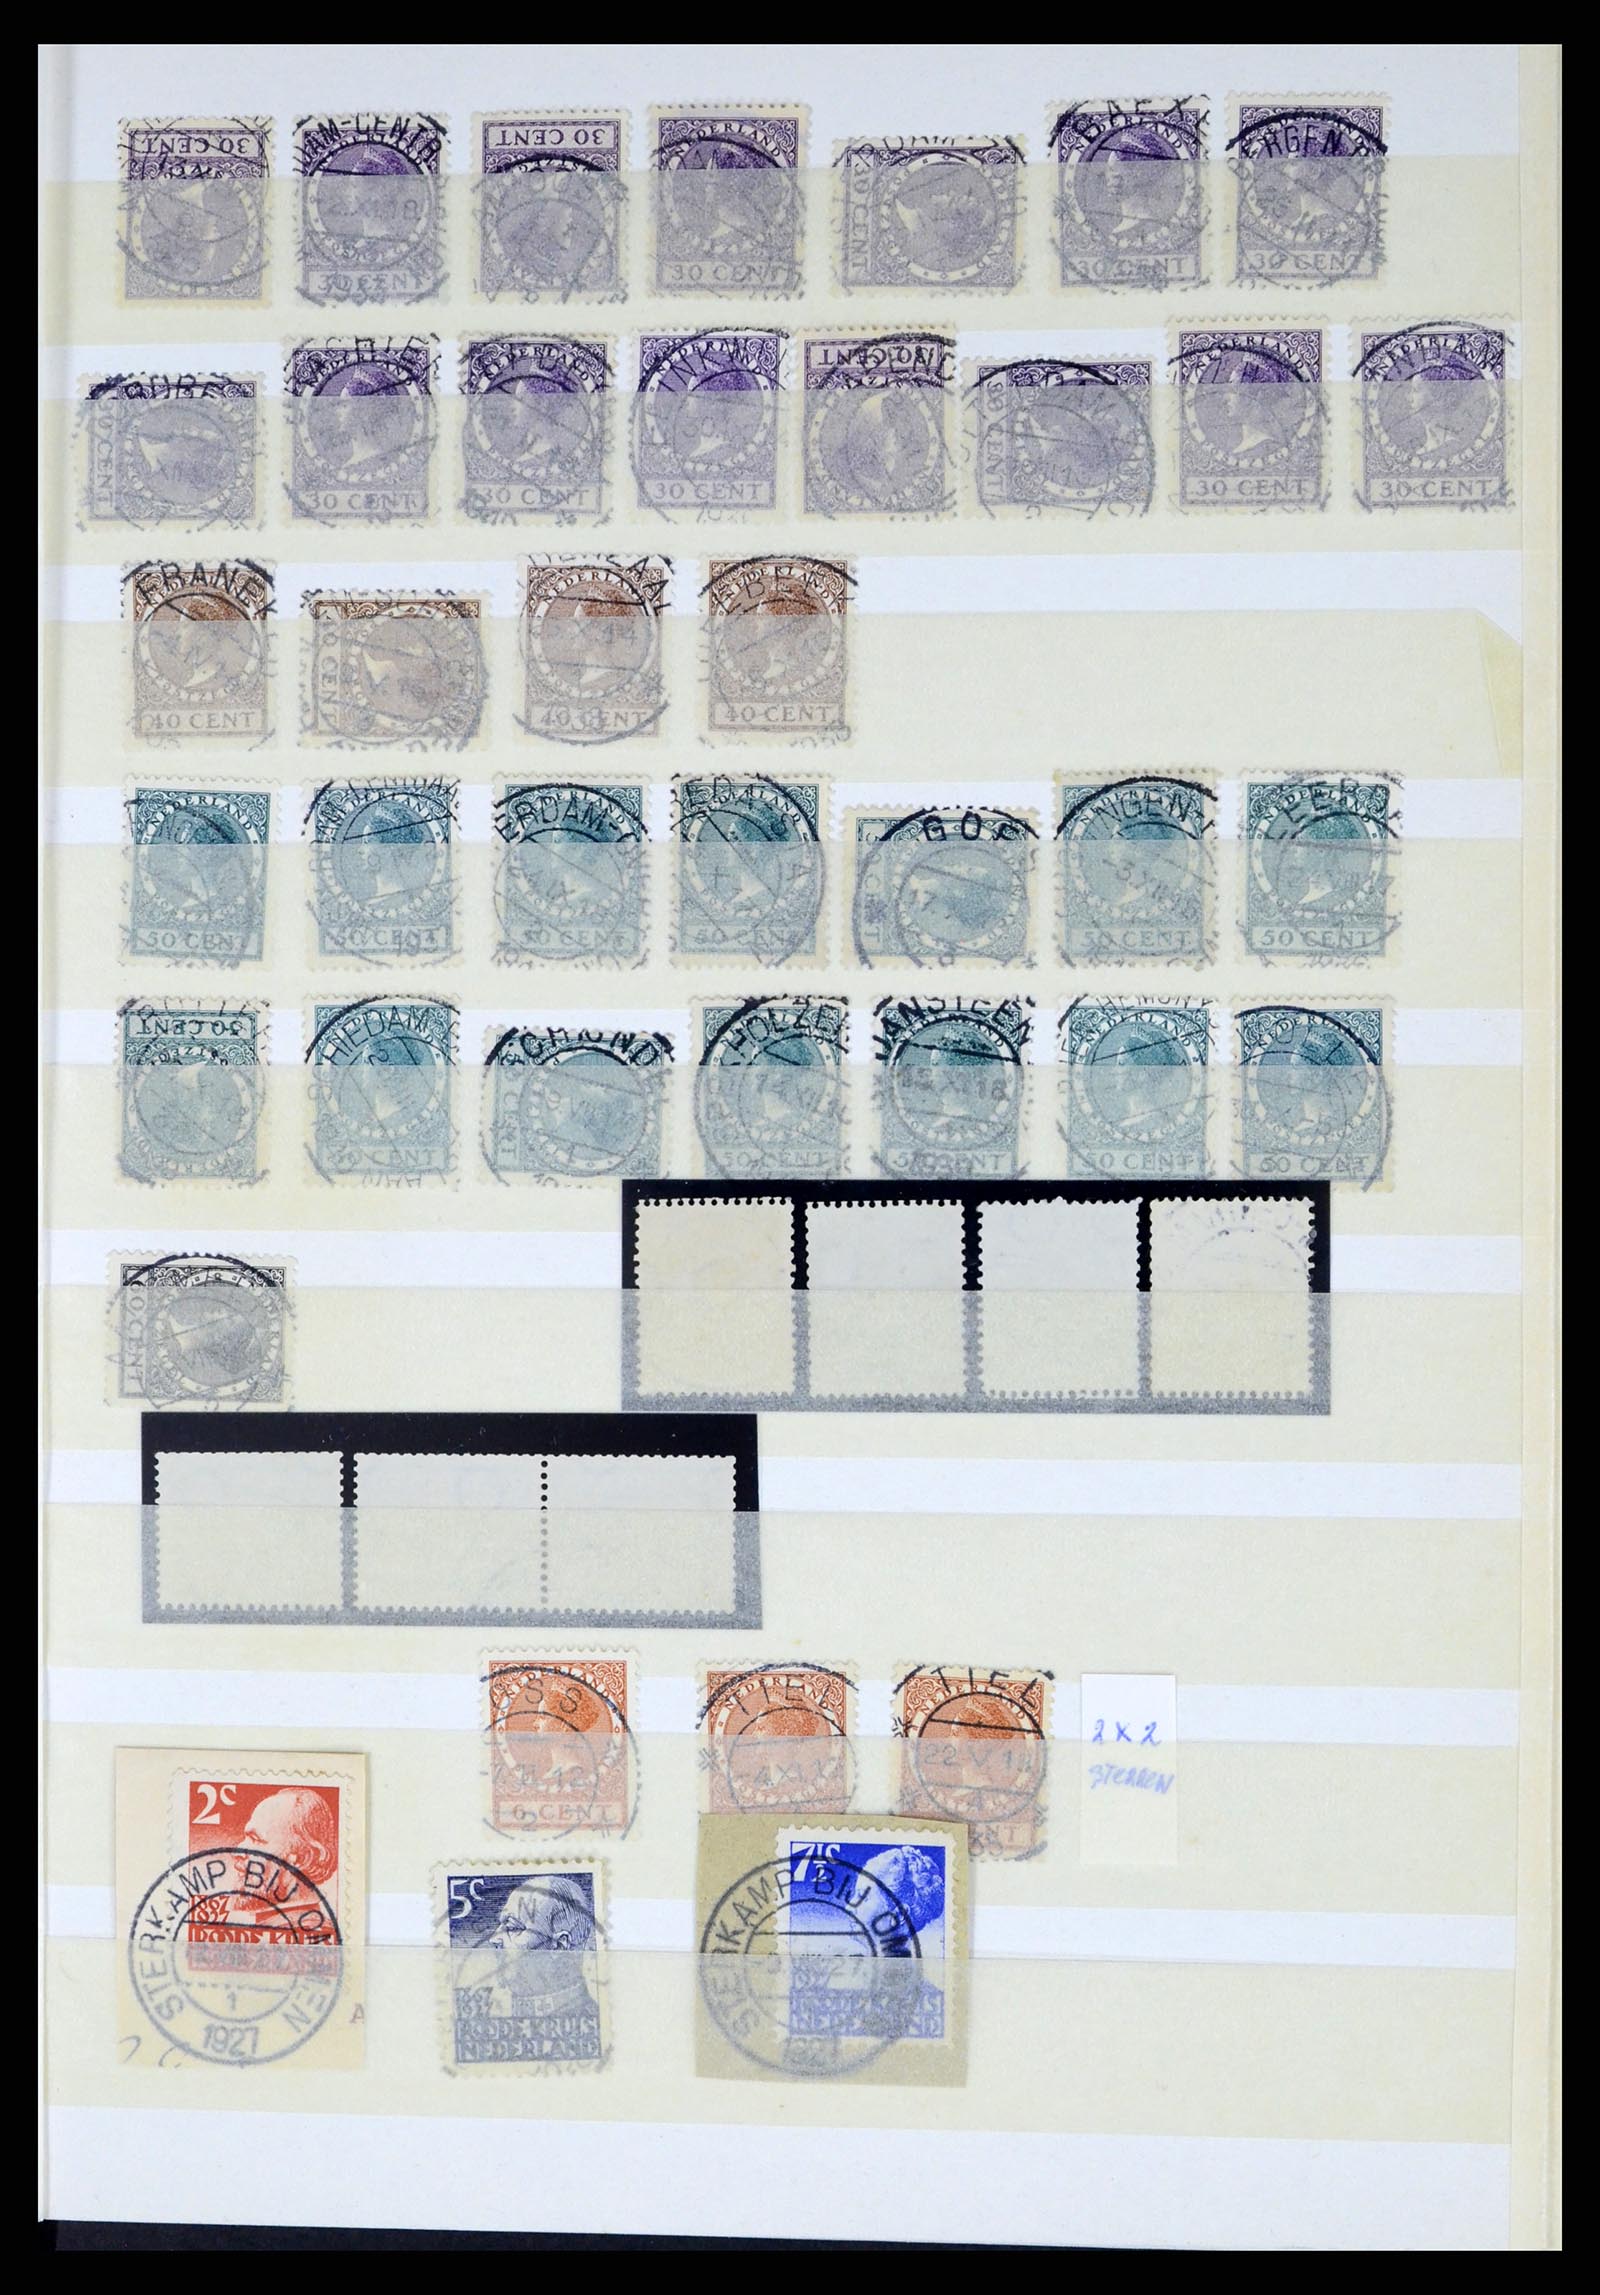 37424 011 - Postzegelverzameling 37424 Nederland kortebalk stempels.